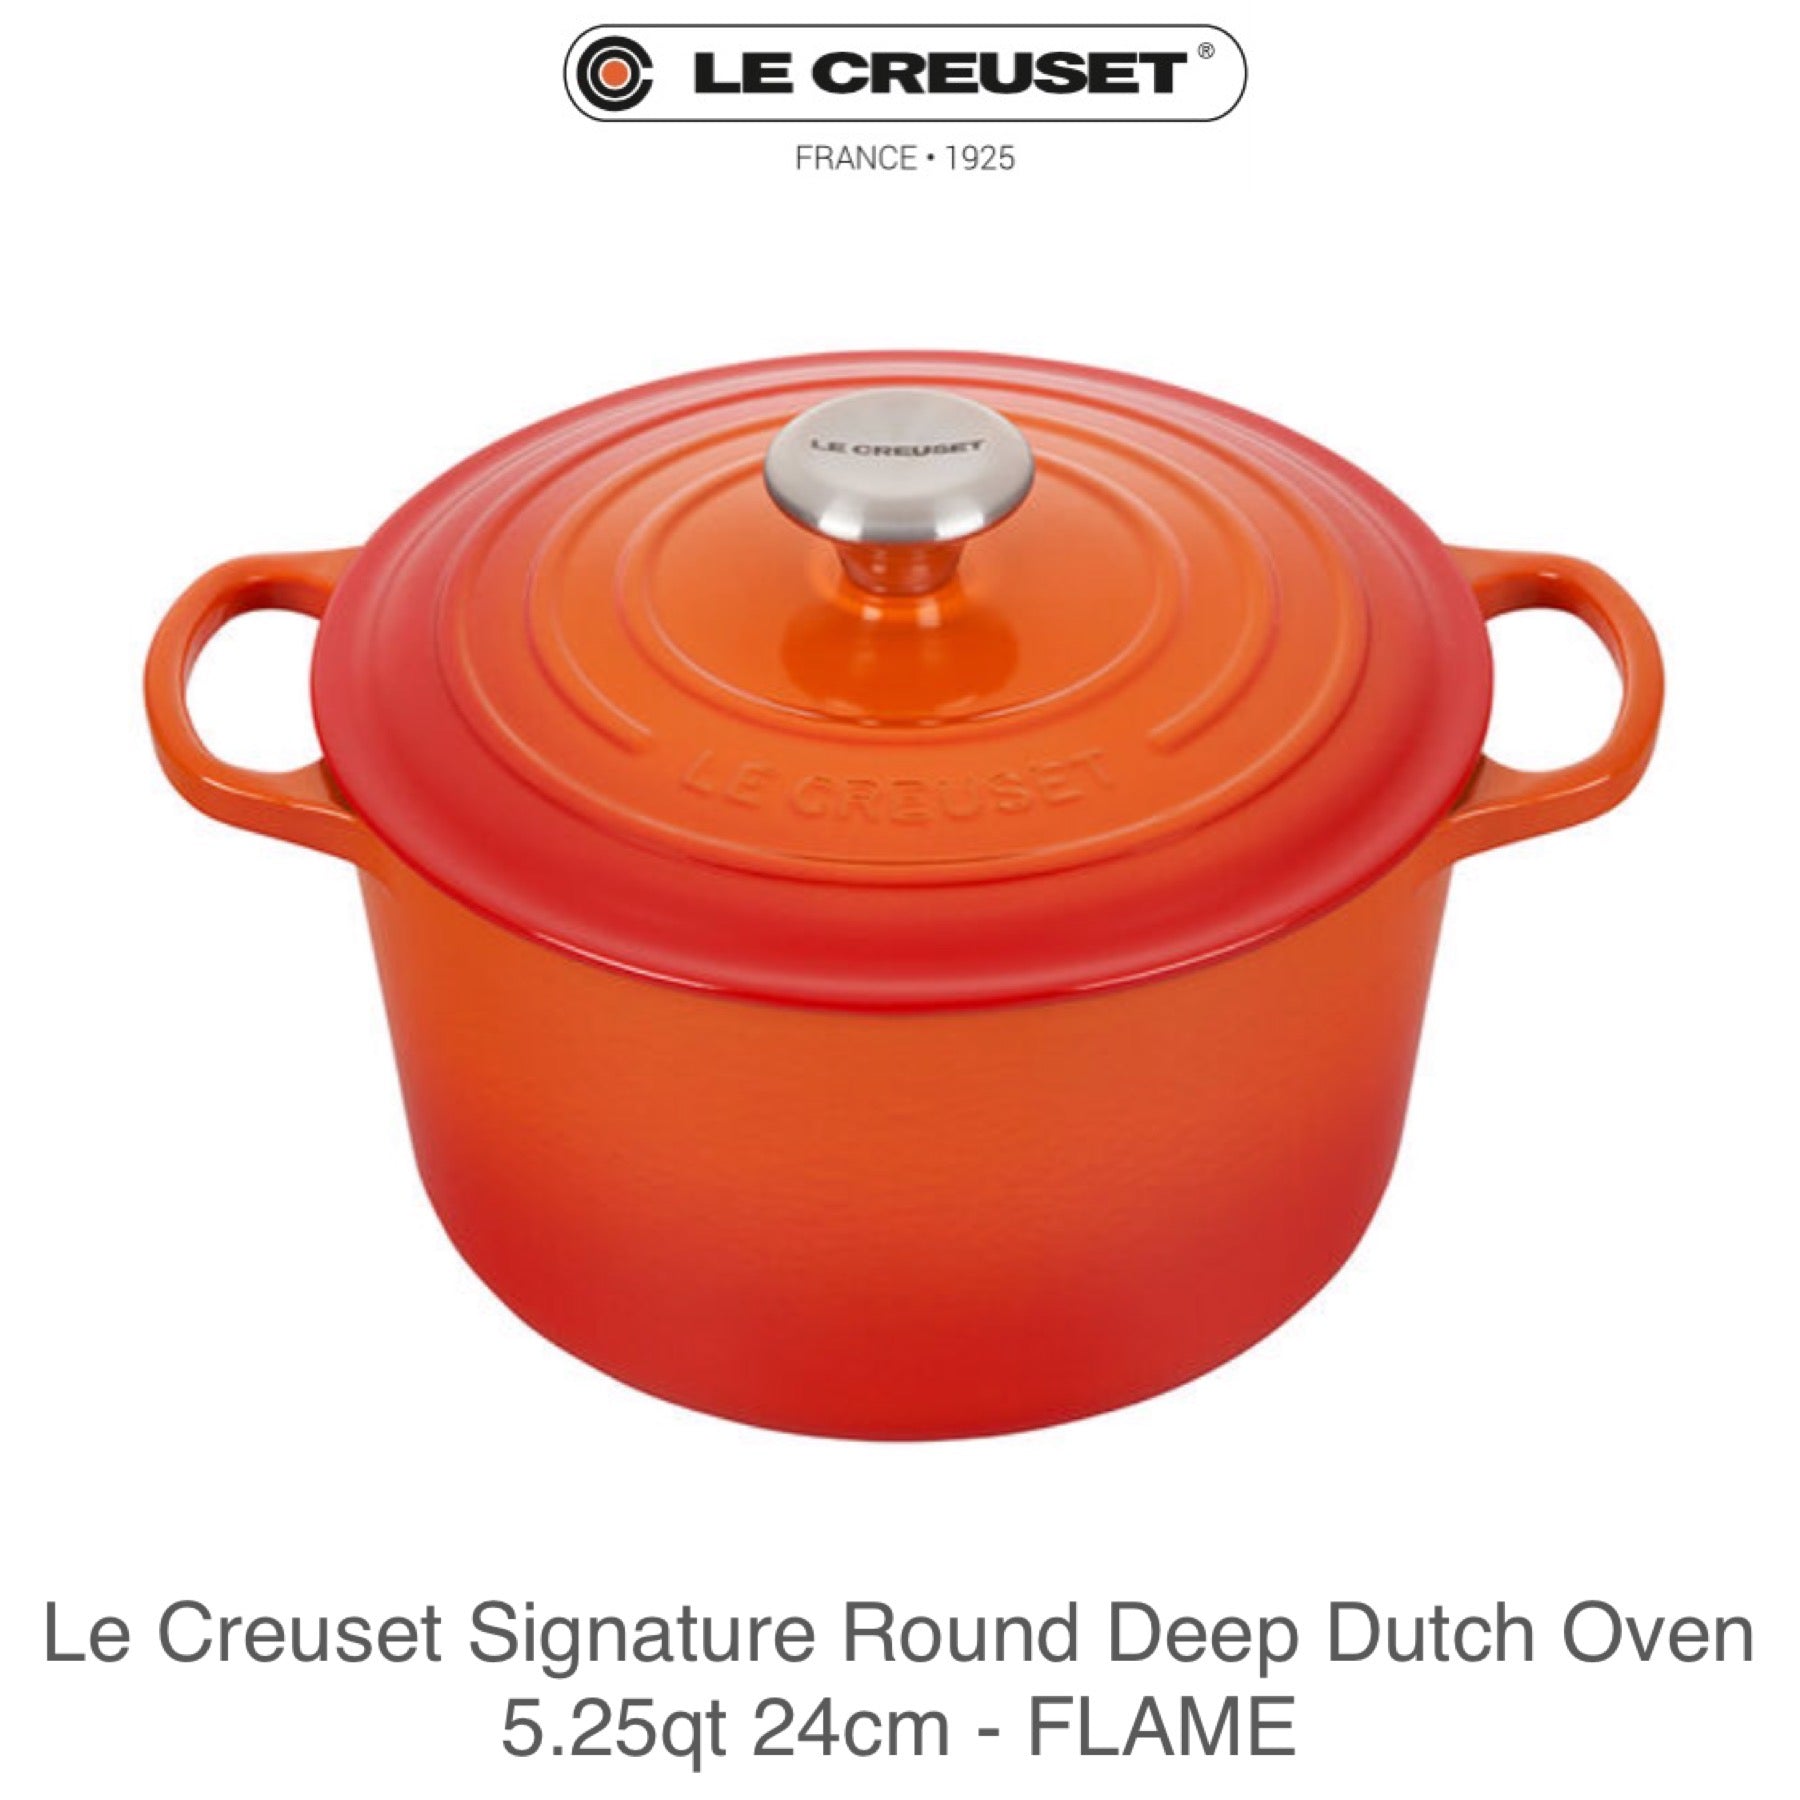 Le Creuset Flame Signature Round Cast Iron Dutch Oven 4.5 qt.